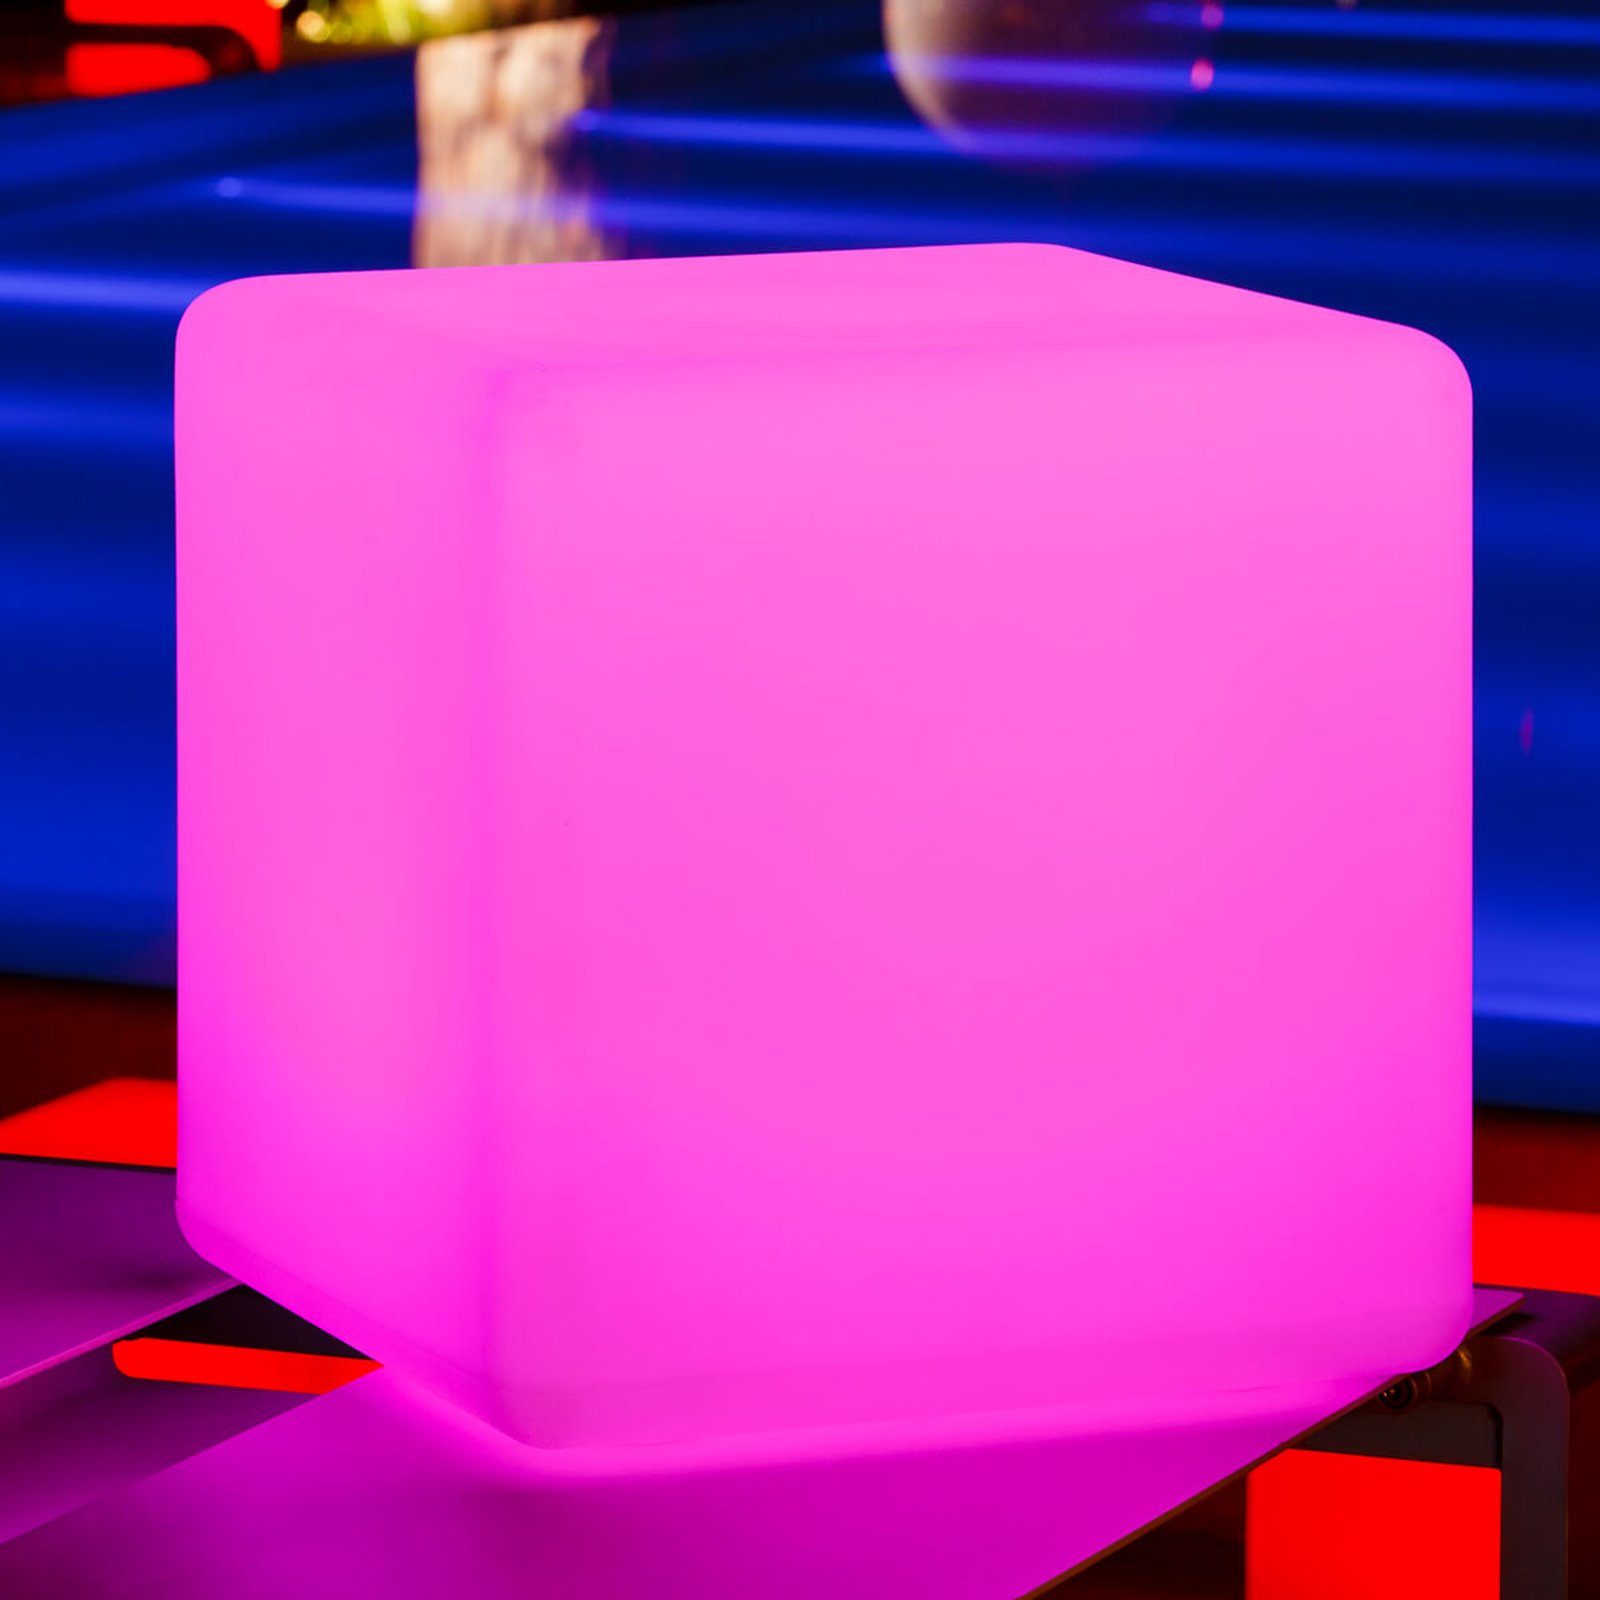 Big Cube luminous cube, controllable via app